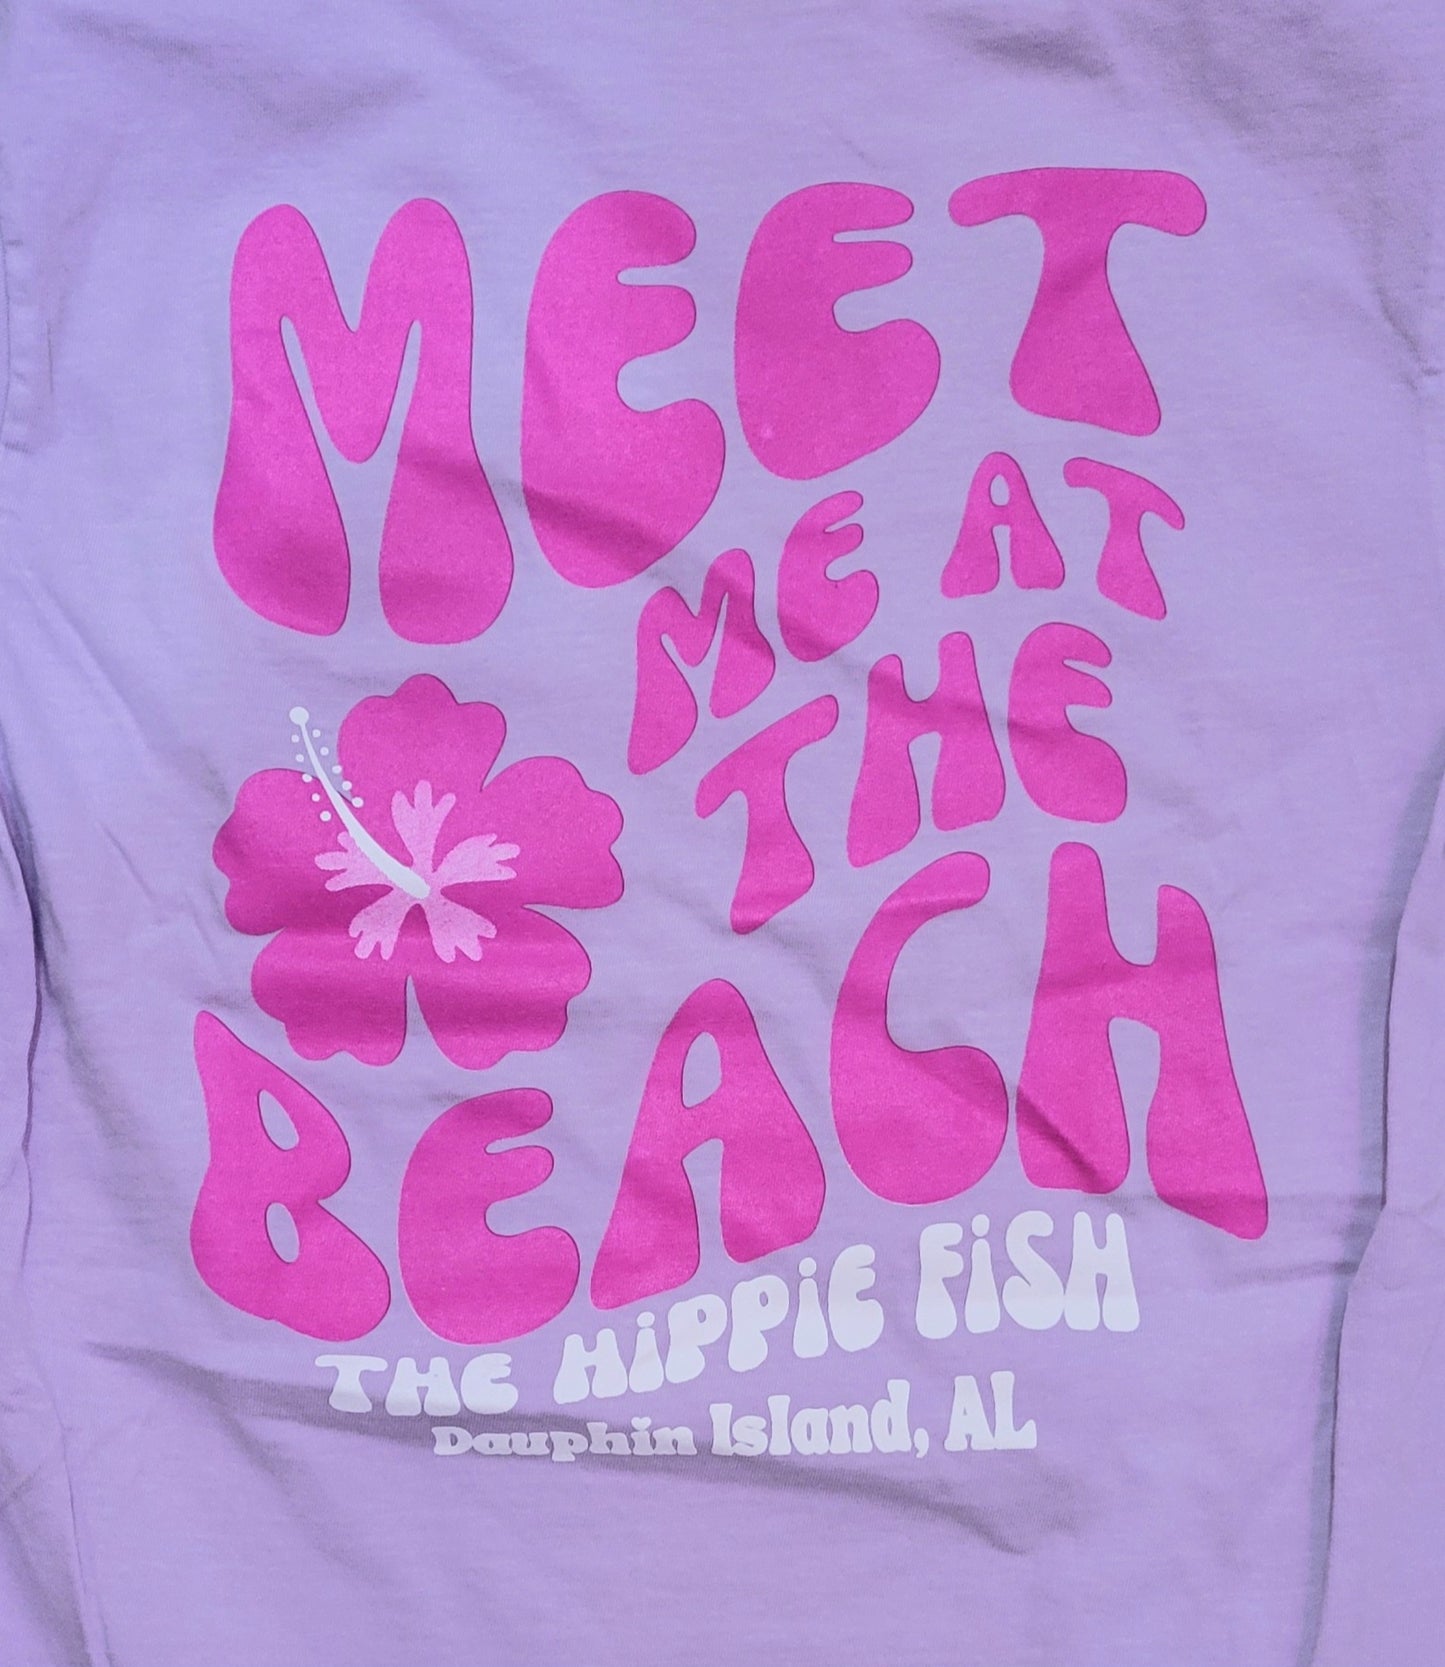 MEET ME AT THE BEACH SS T-SHIRT